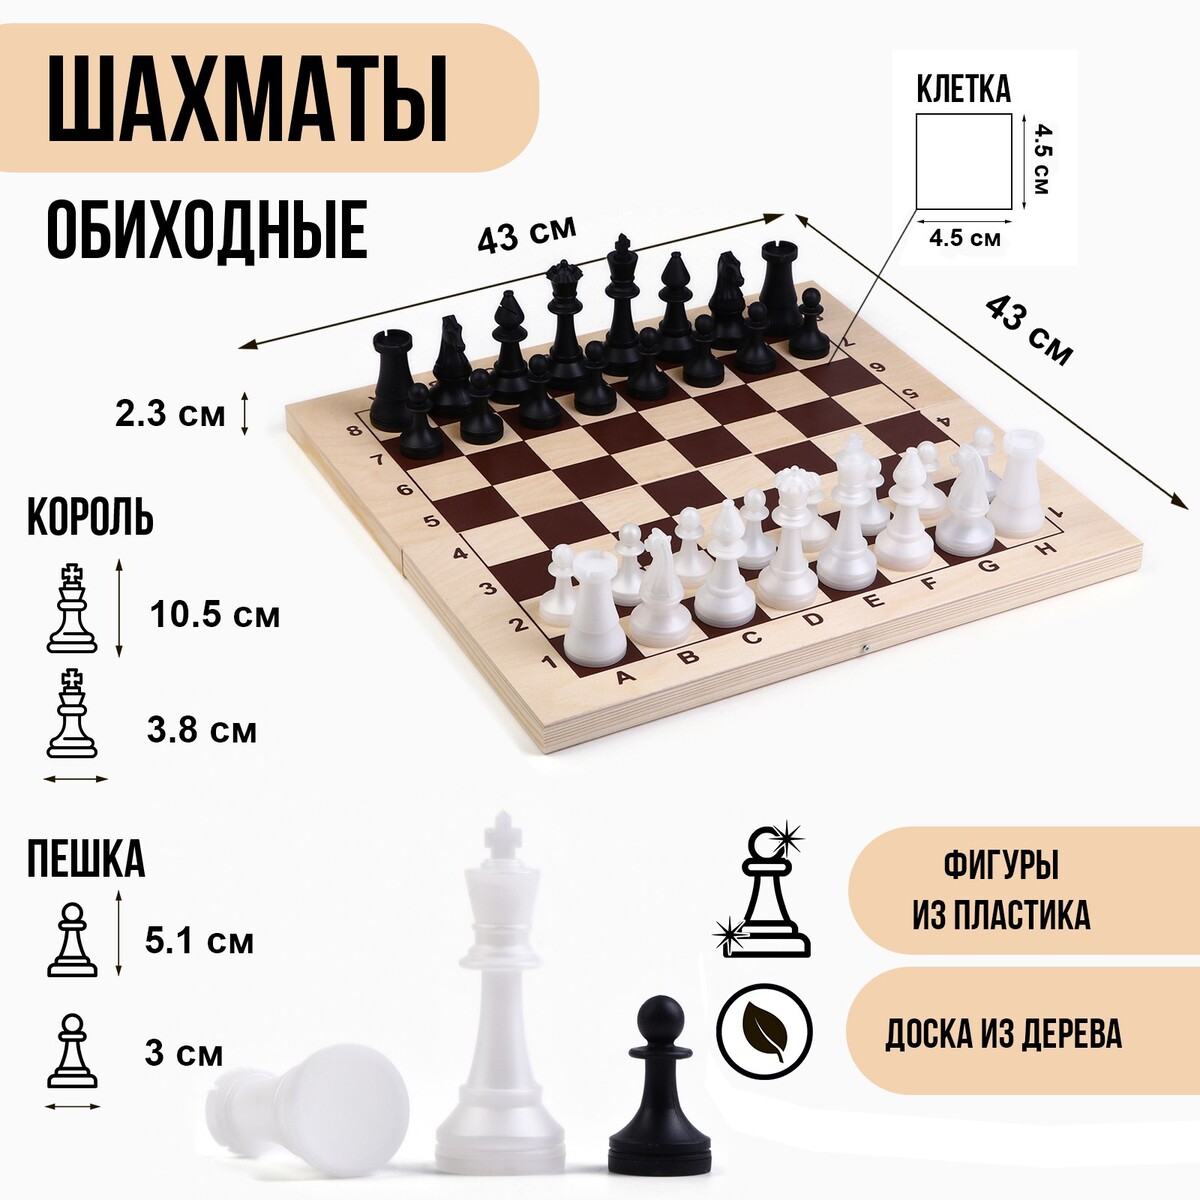 Шахматы гроссмейстерские, турнирные 43 х 43 см, фигуры пластик, король 10.5 см, пешка 5 см шахматные фигуры обиходные король h 7 см пешка 4 см пластик